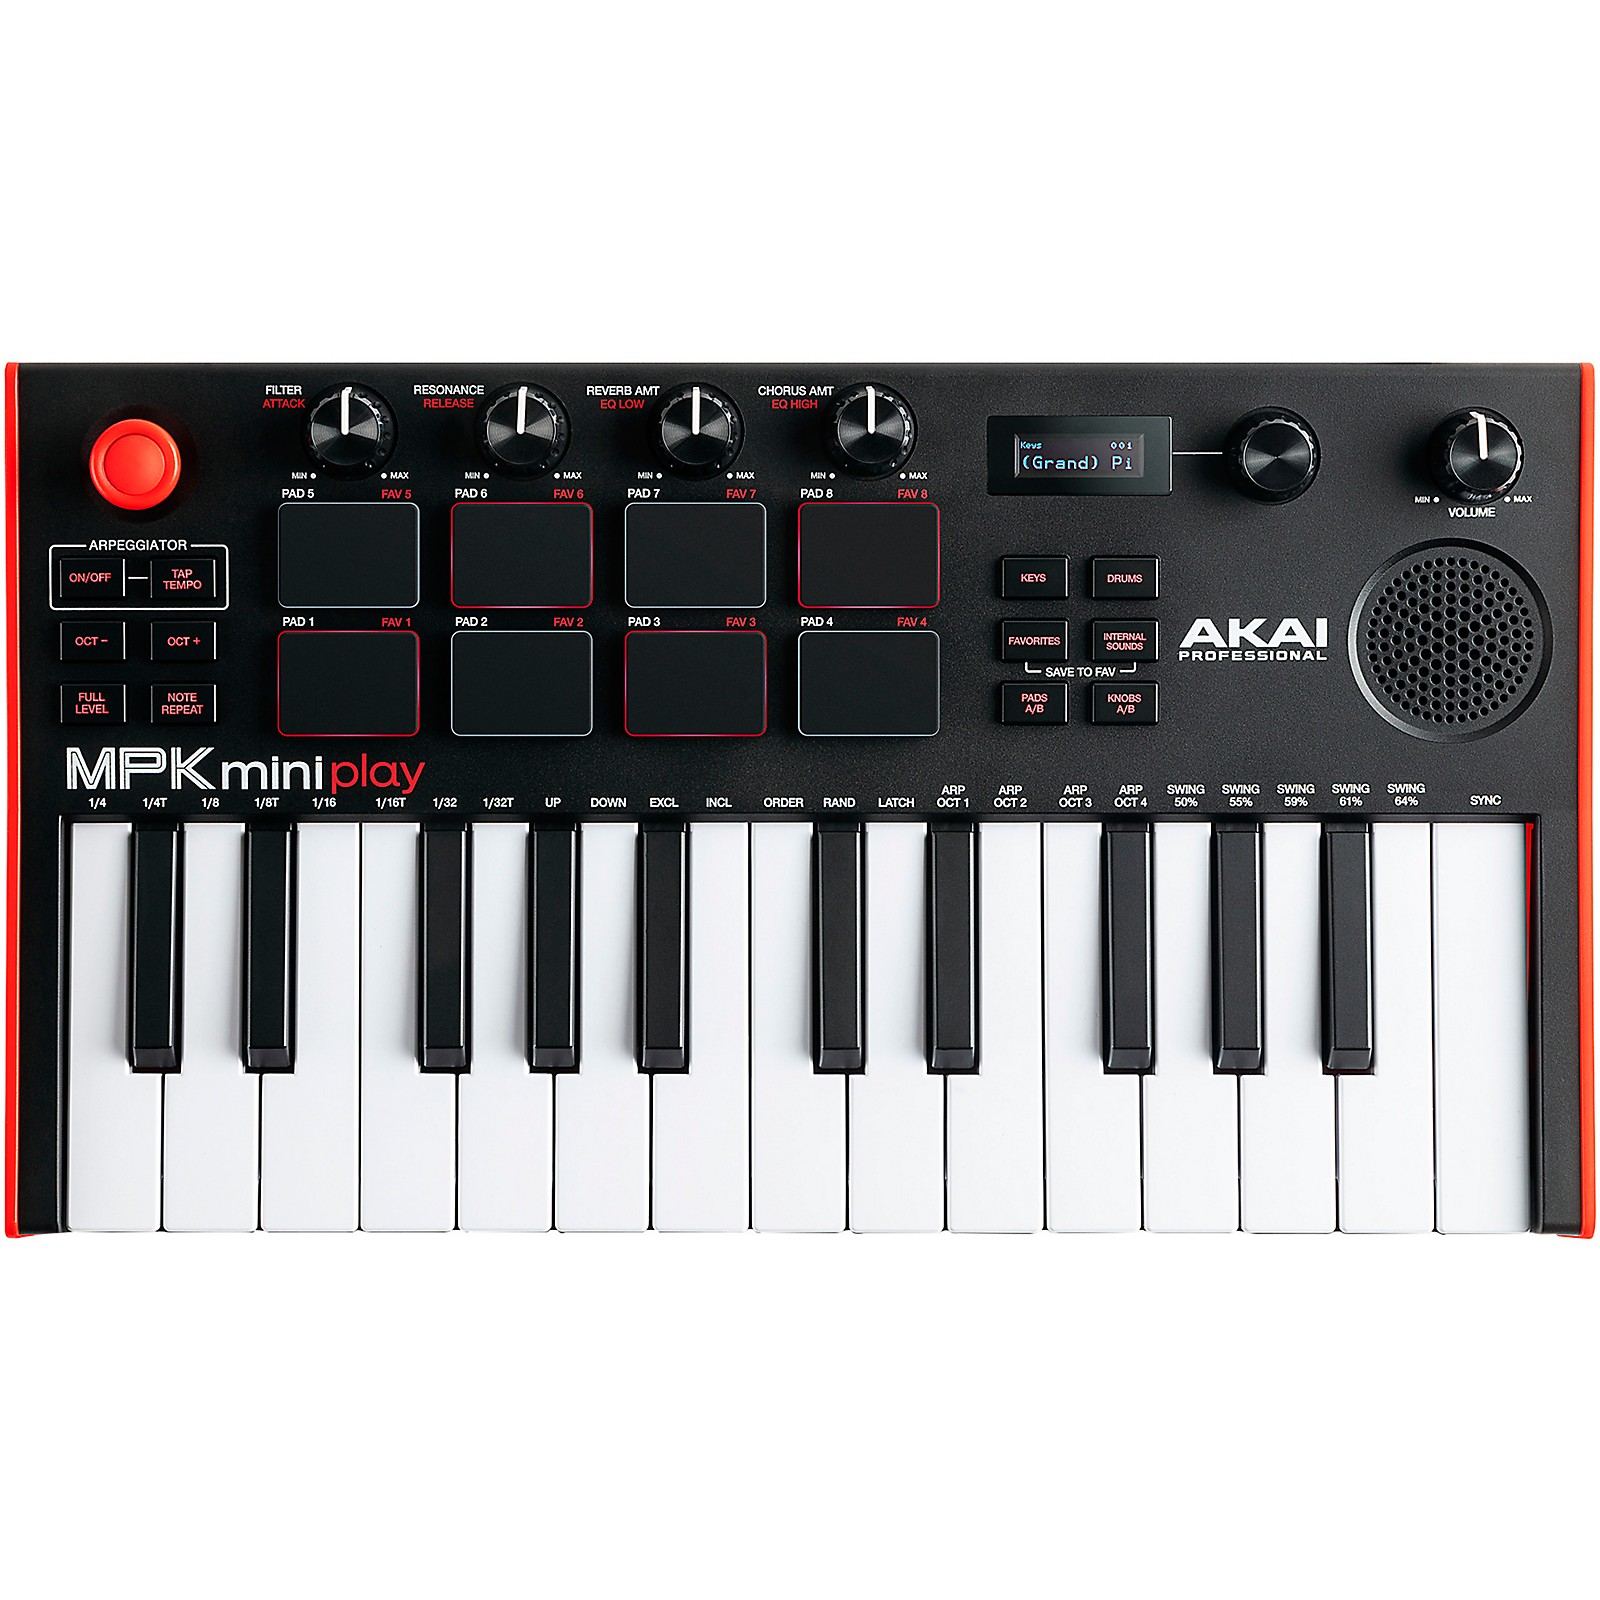 Akai Professional MPK mini play mk3 Mini Controller Keyboard With 